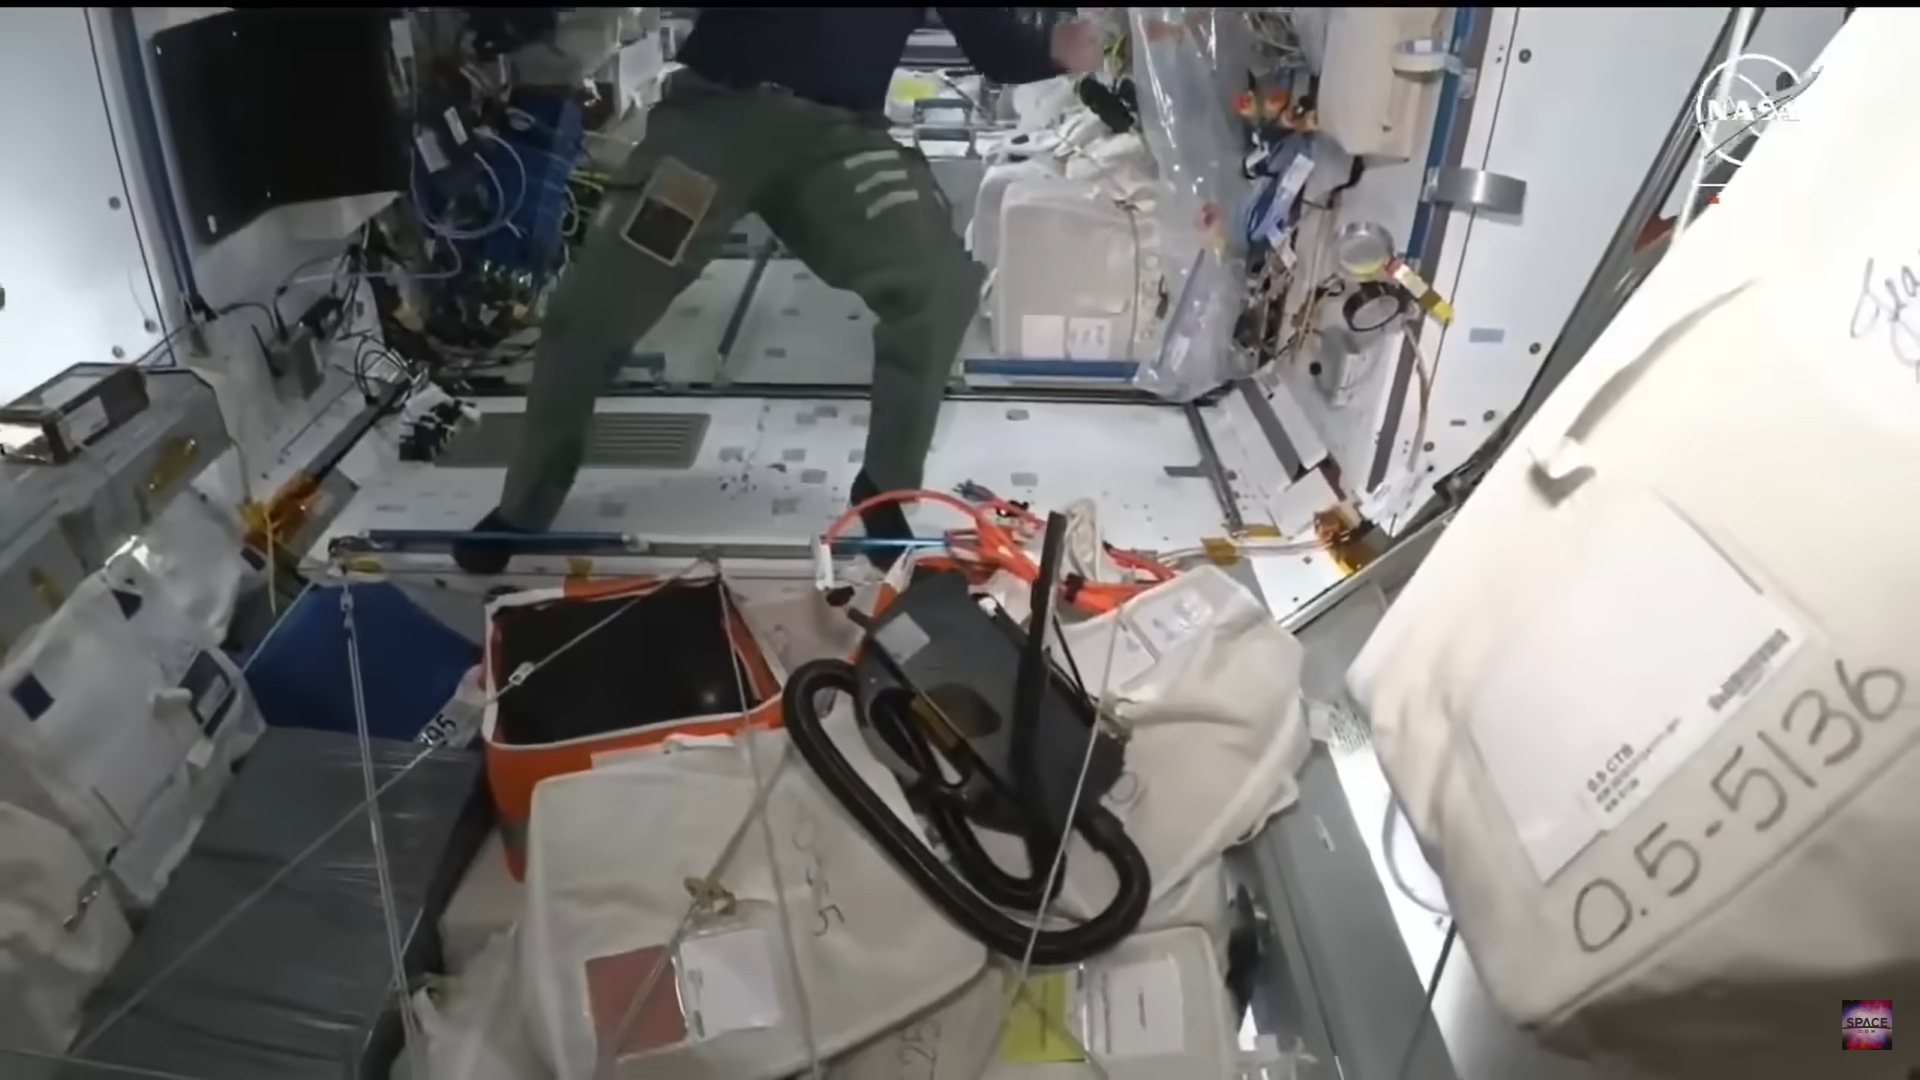 Chuyến tham quan kết thúc khi 2 phi hành gia quay trở lại ISS lúc phần sàn của trạm vụ trụ đang được hút bụi. Wilmore giải thích do thời điểm quay thứ Bảy, nên theo lịch trình, phi hành đoàn thường 